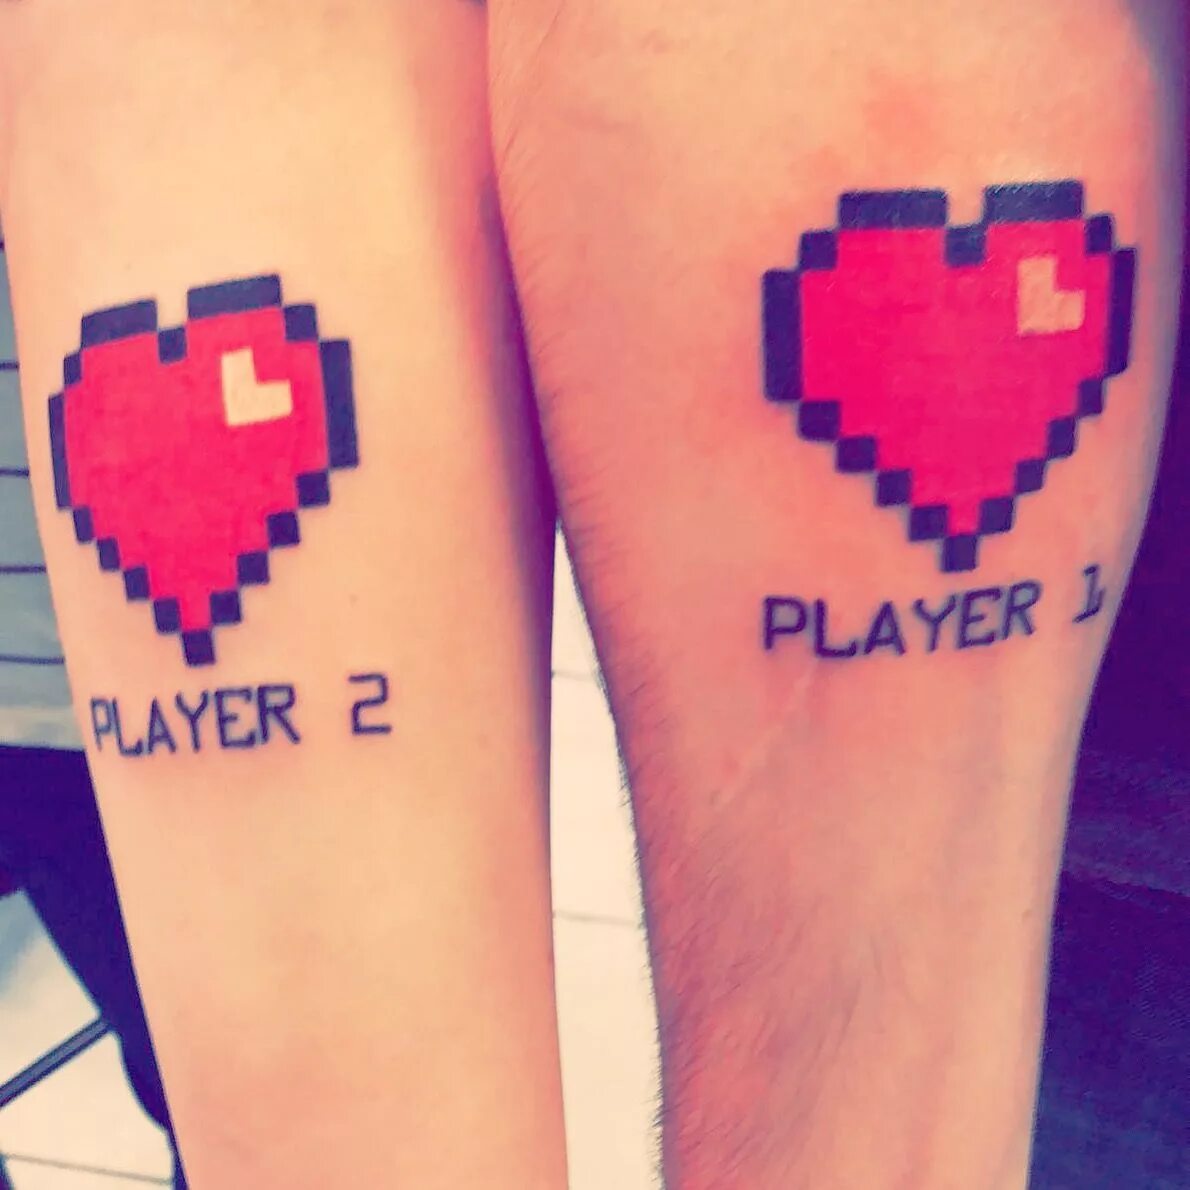 Two player 1. Тату Player 1. Парные тату Player 1. Пиксельные Татуировки. Татуировка парные пиксельные.